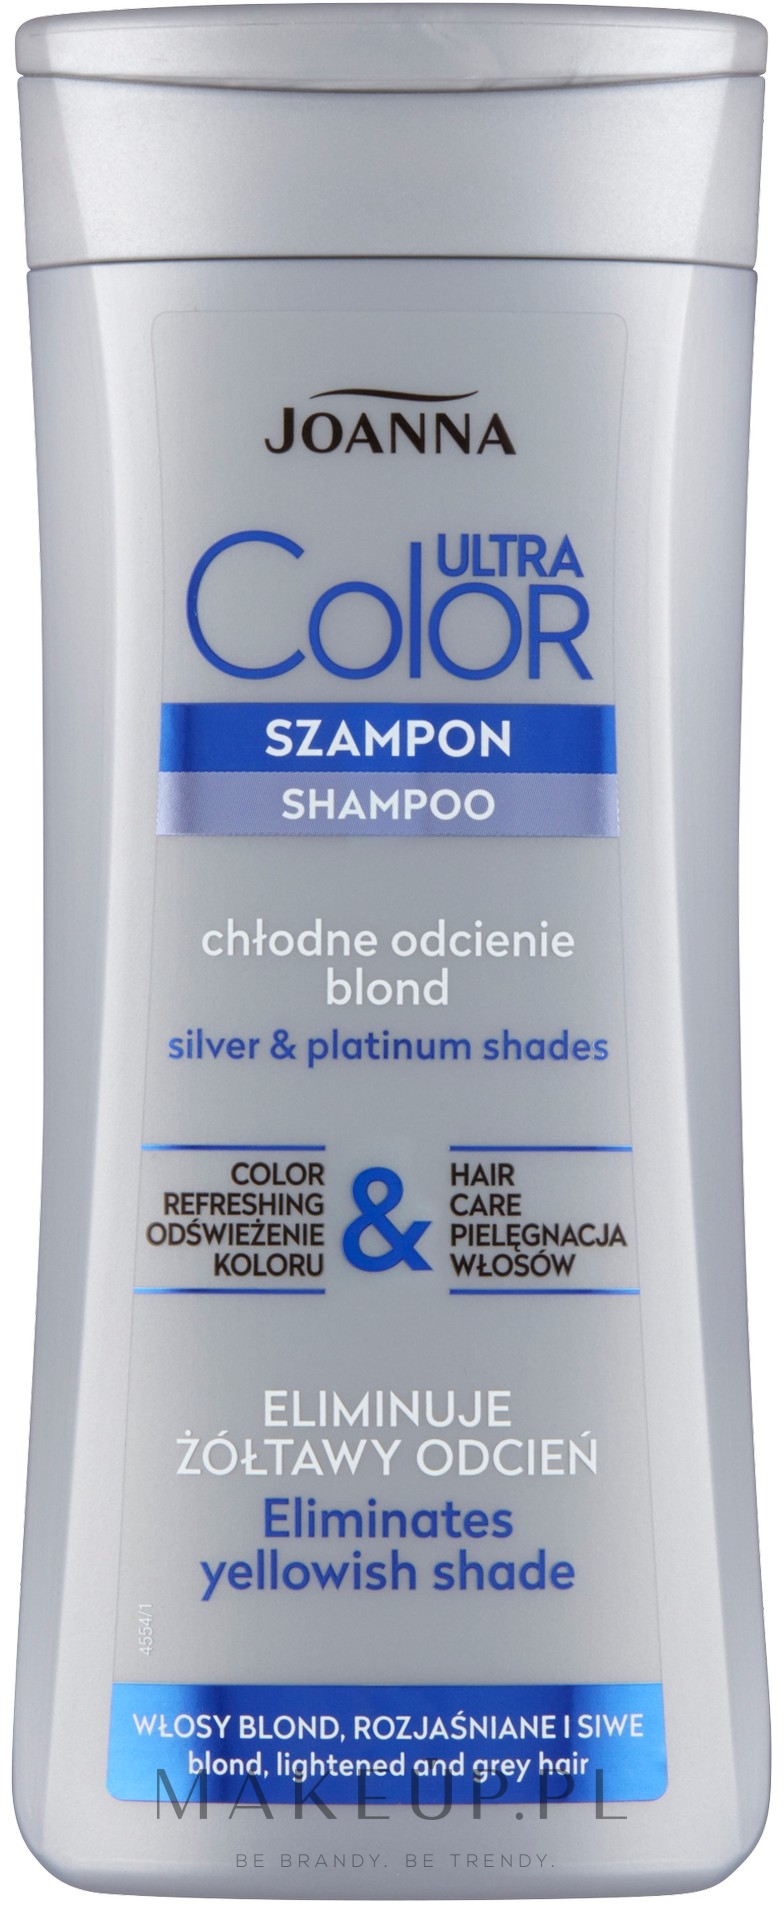 szampon dla kobiet do siwych